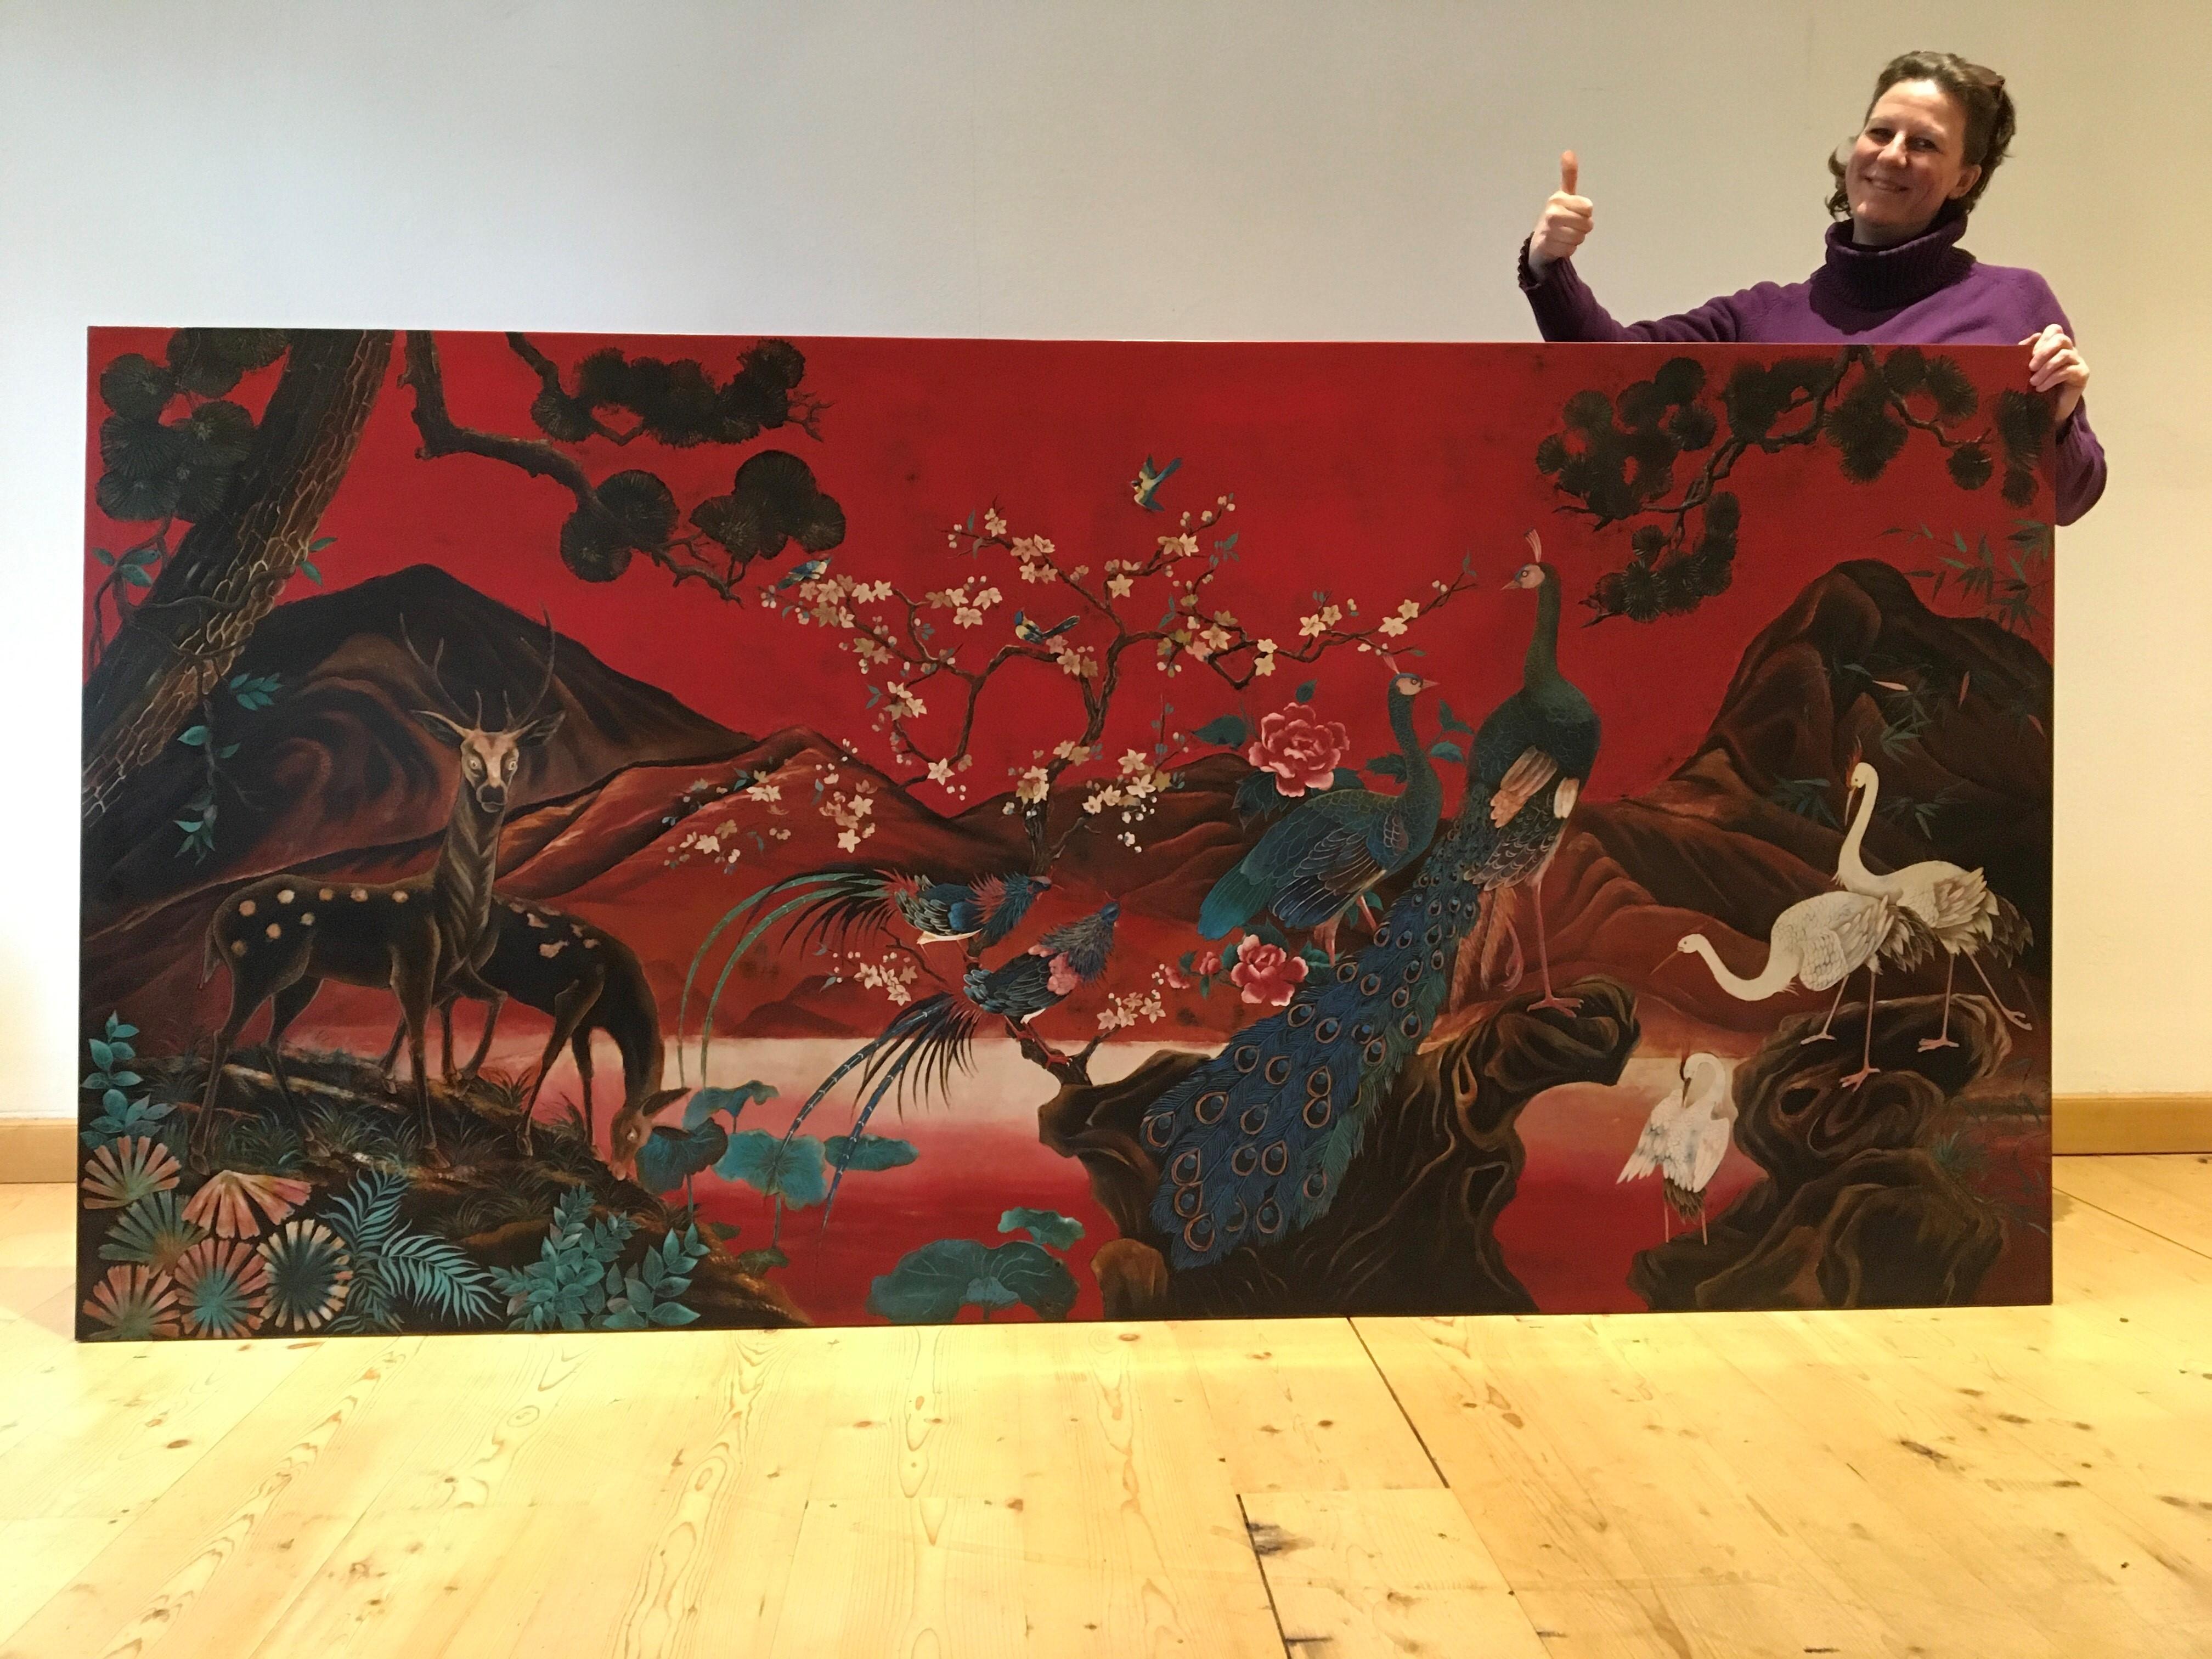 Superbe panneau mural asiatique XL avec beaucoup d'oiseaux. 
Ce panneau d'art rouge présente un magnifique paysage avec des cerfs, des oiseaux de paradis, des paons, des grues, des arbres et des fleurs. En arrière-plan, les montagnes. 
Elle a été